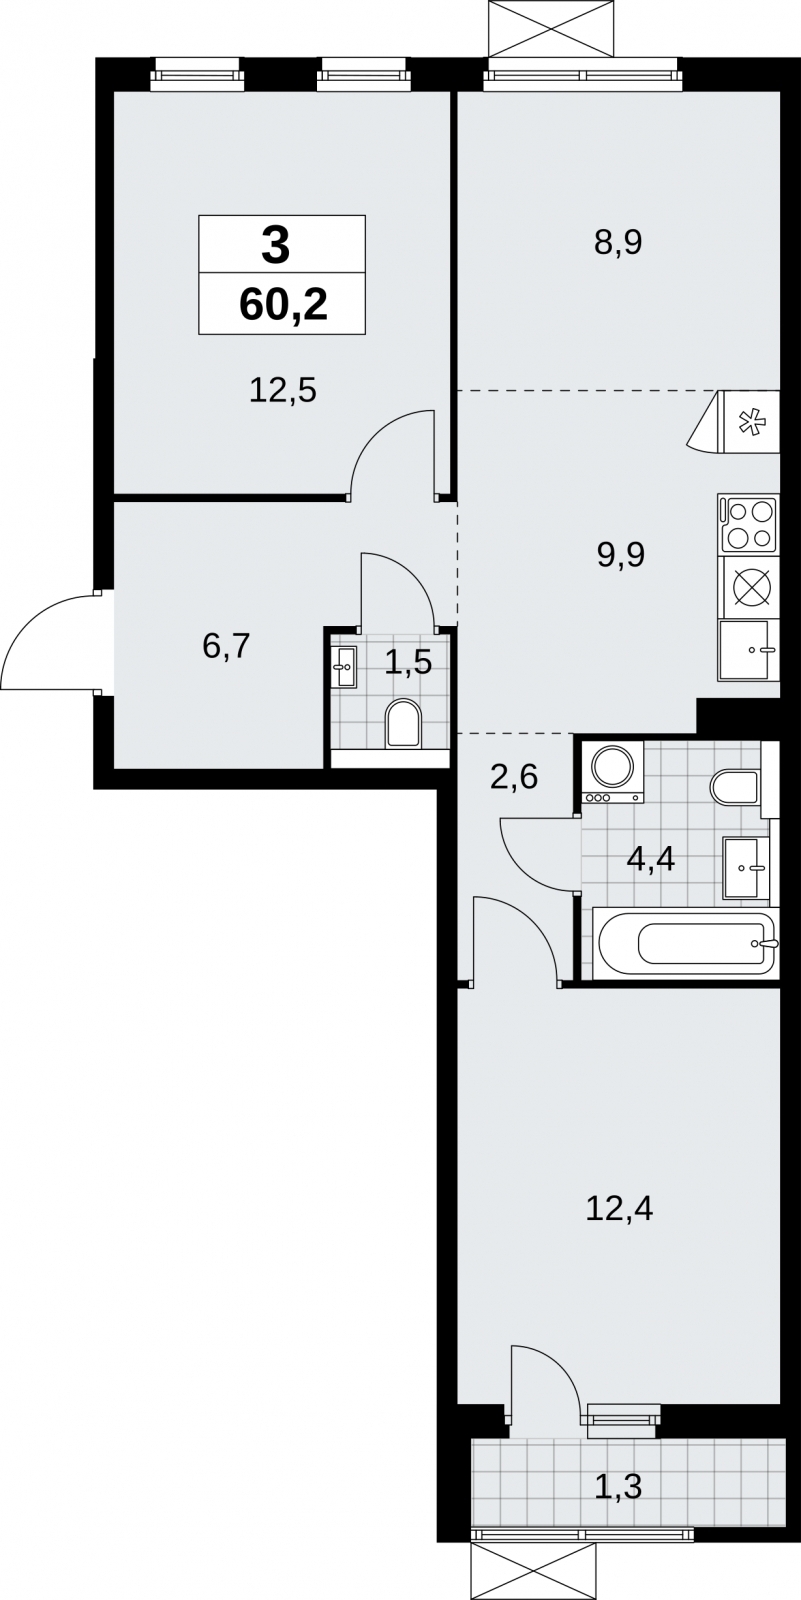 Продается 3-комнатная квартира в новом жилом комплексе, рядом с метро